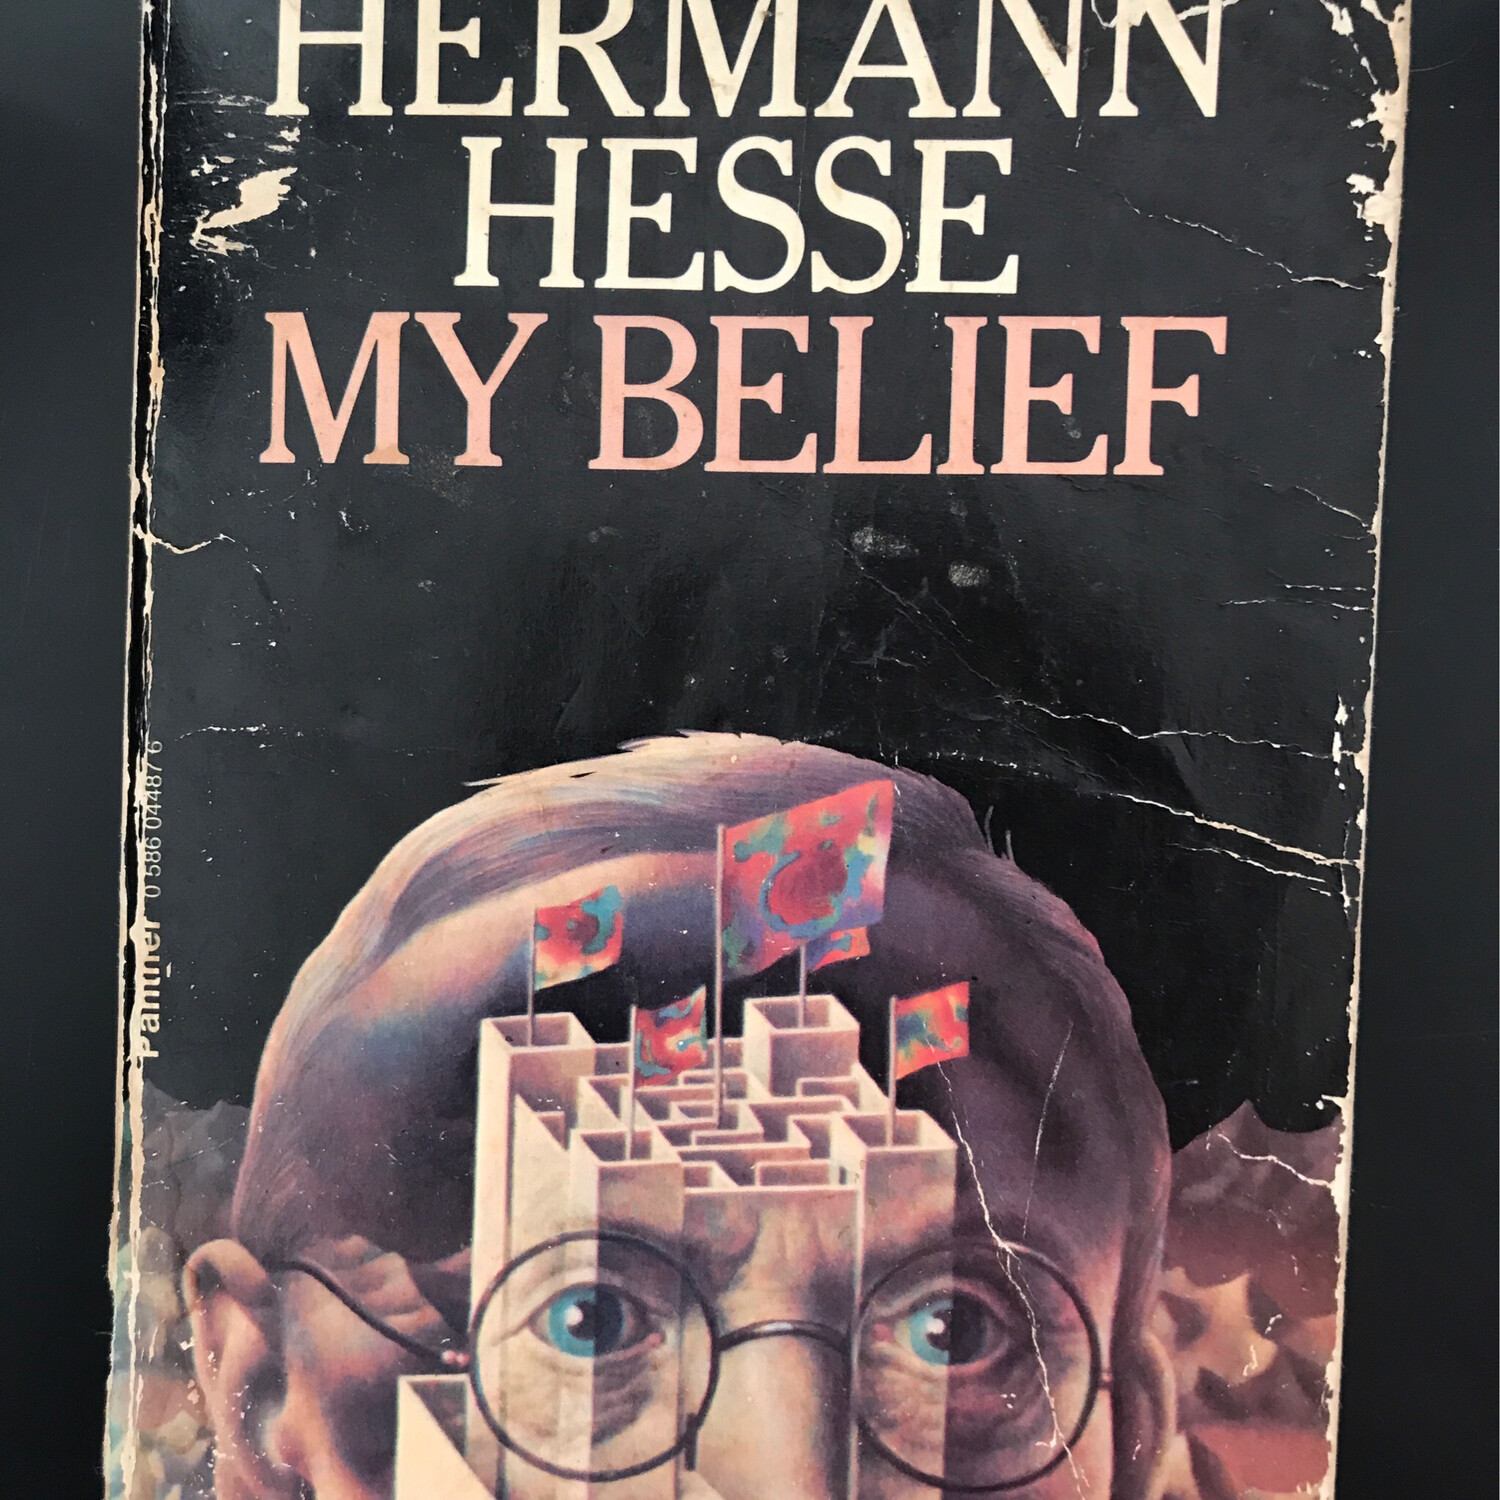 My Belief, Hermann Hesse